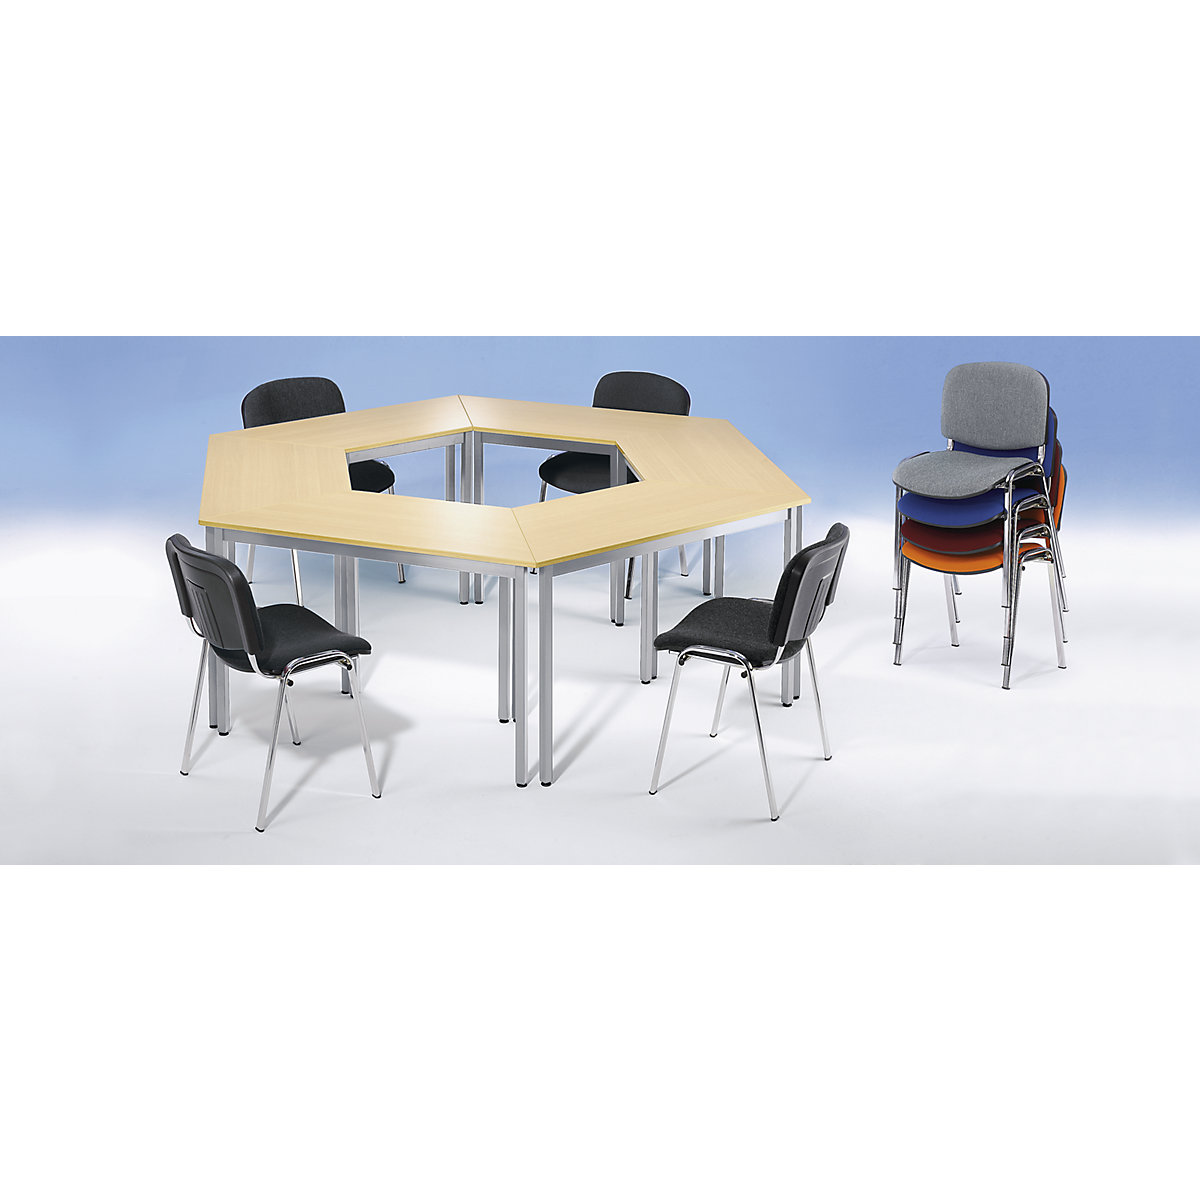 Višenamjenski stol – eurokraft basic, u obliku trapeza, VxŠxD 740 x 1400 x 700 mm, ploča u imitaciji jasena u crnoj boji, postolje u aluminij bijeloj boji-1